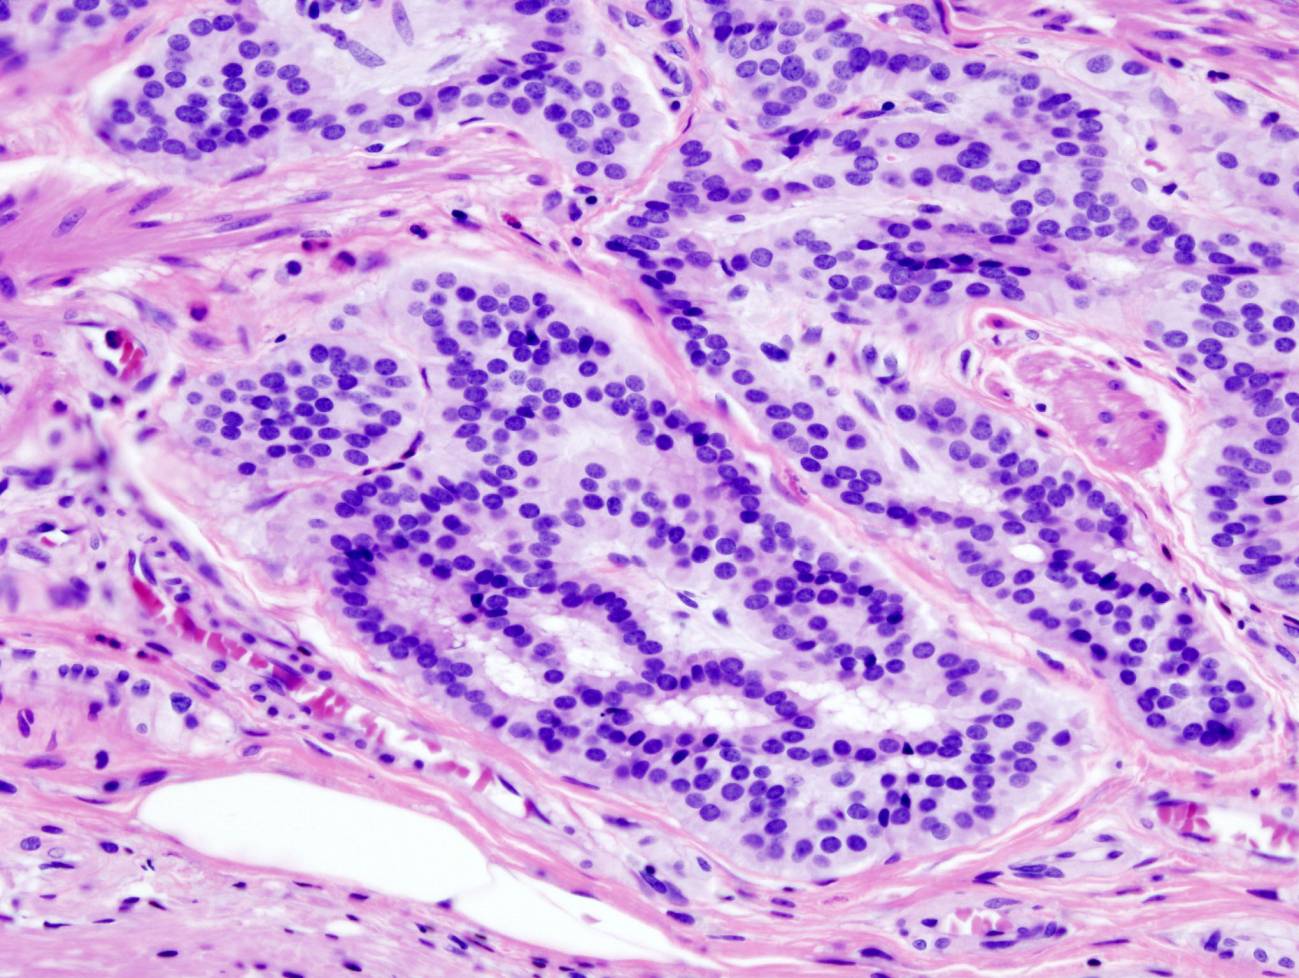 Imagen histopatológica de carcinoide de colon teñido con hematoxilina y eosina. Imagen:Wikipedia 